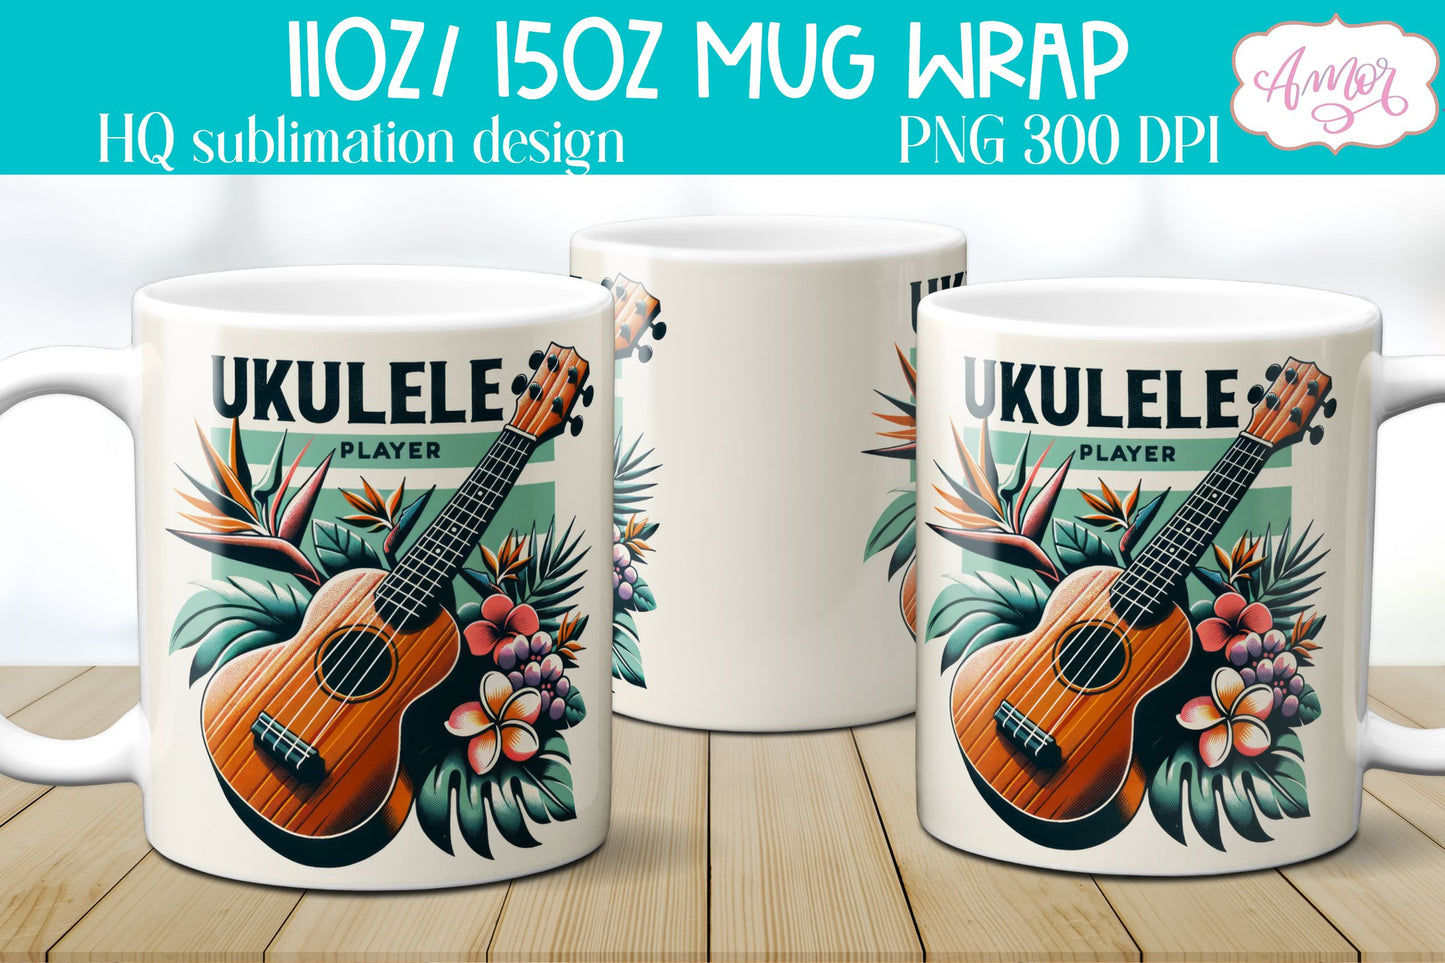 Ukulele Player Mug Wrap PNG for Sublimation